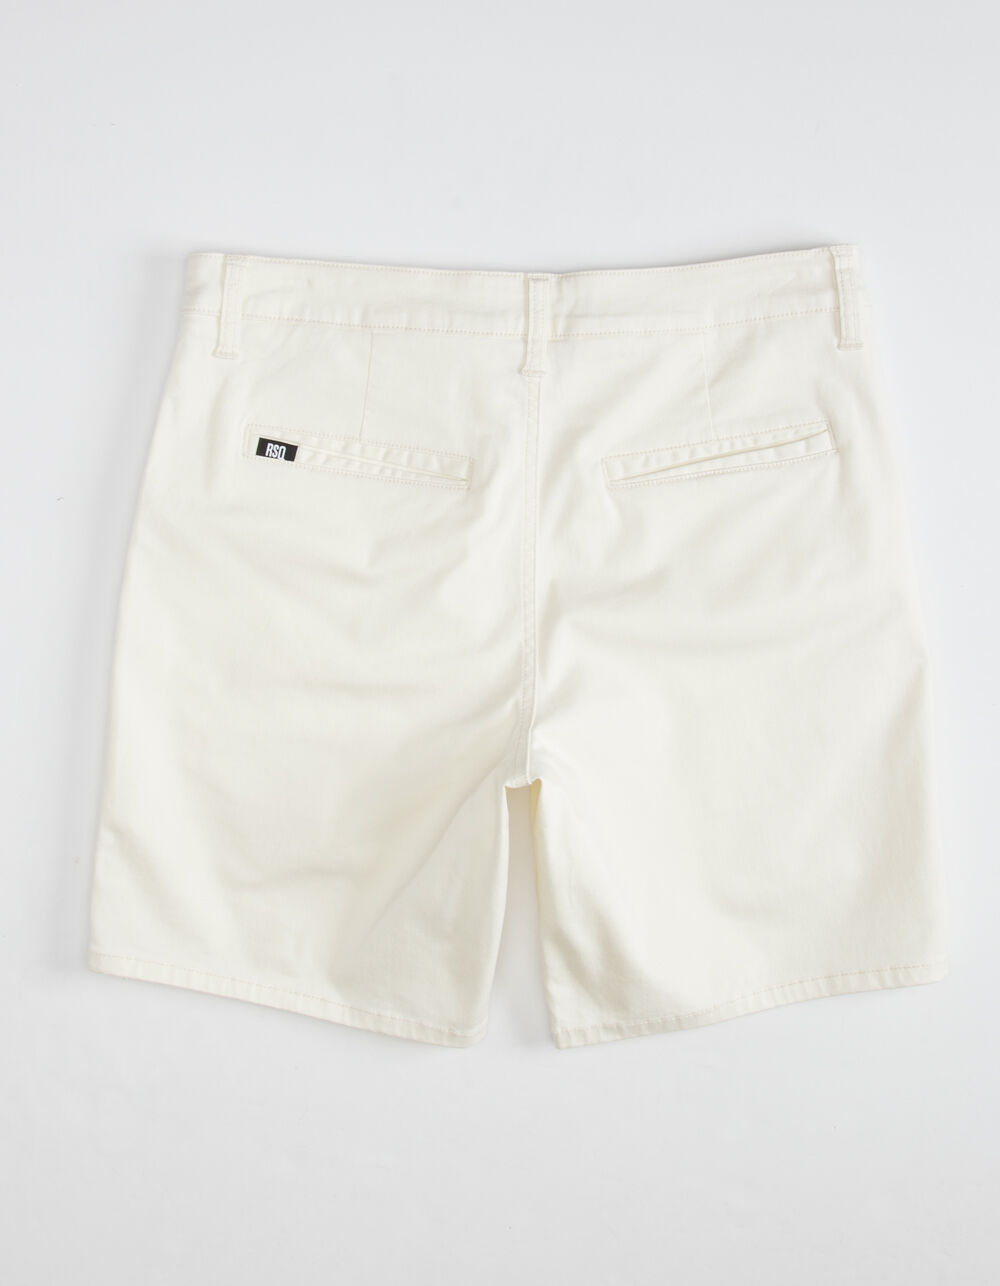 RSQ Short Mens White Chino Shorts - WHITE | Tillys